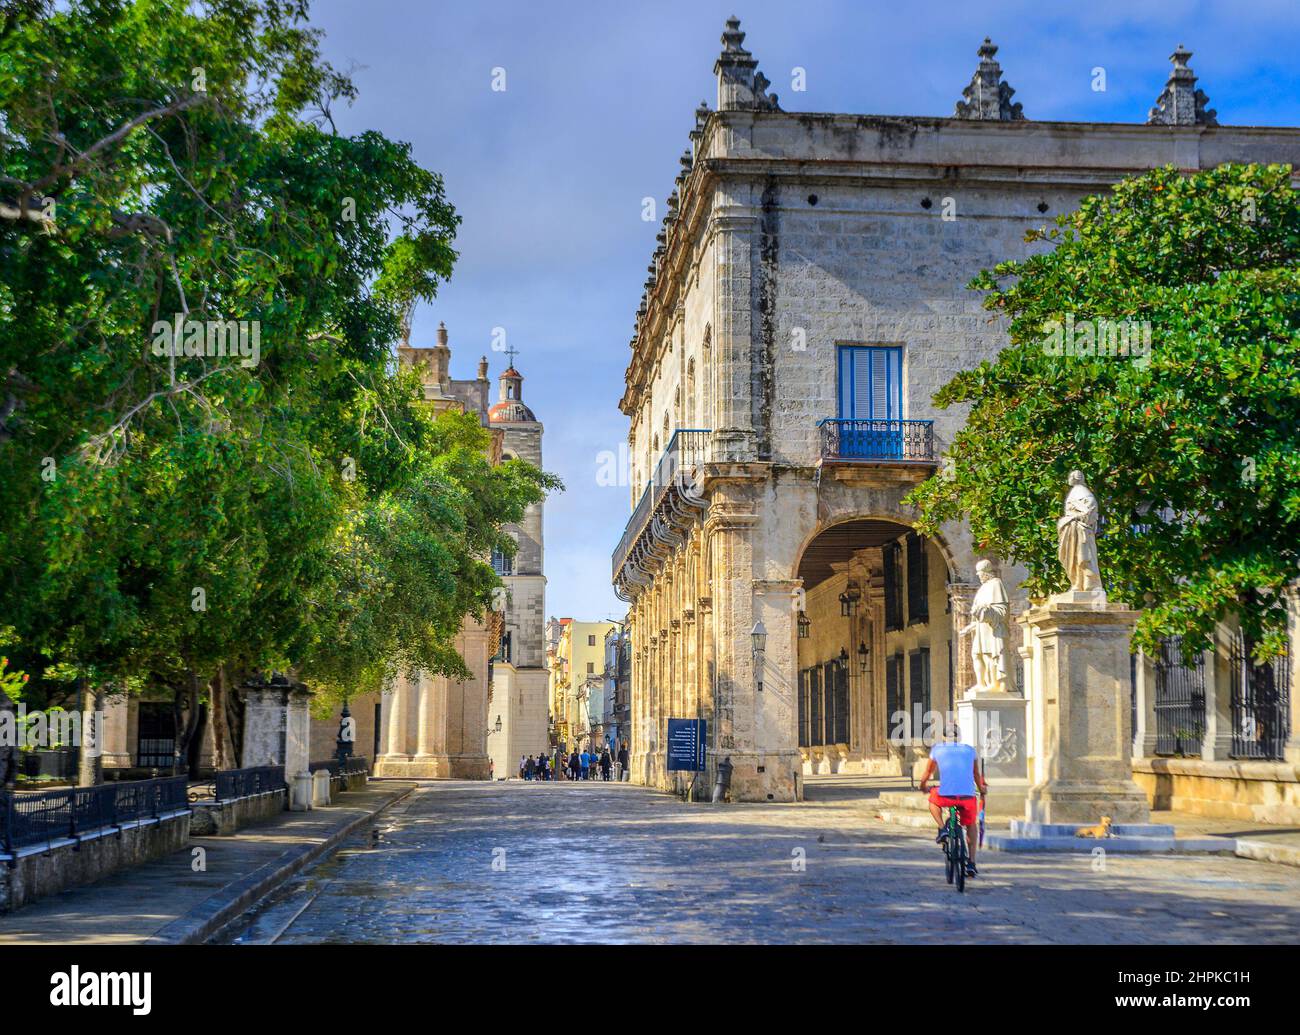 rue pavée de pierre dans le quartier historique de la Havane, Cuba Banque D'Images